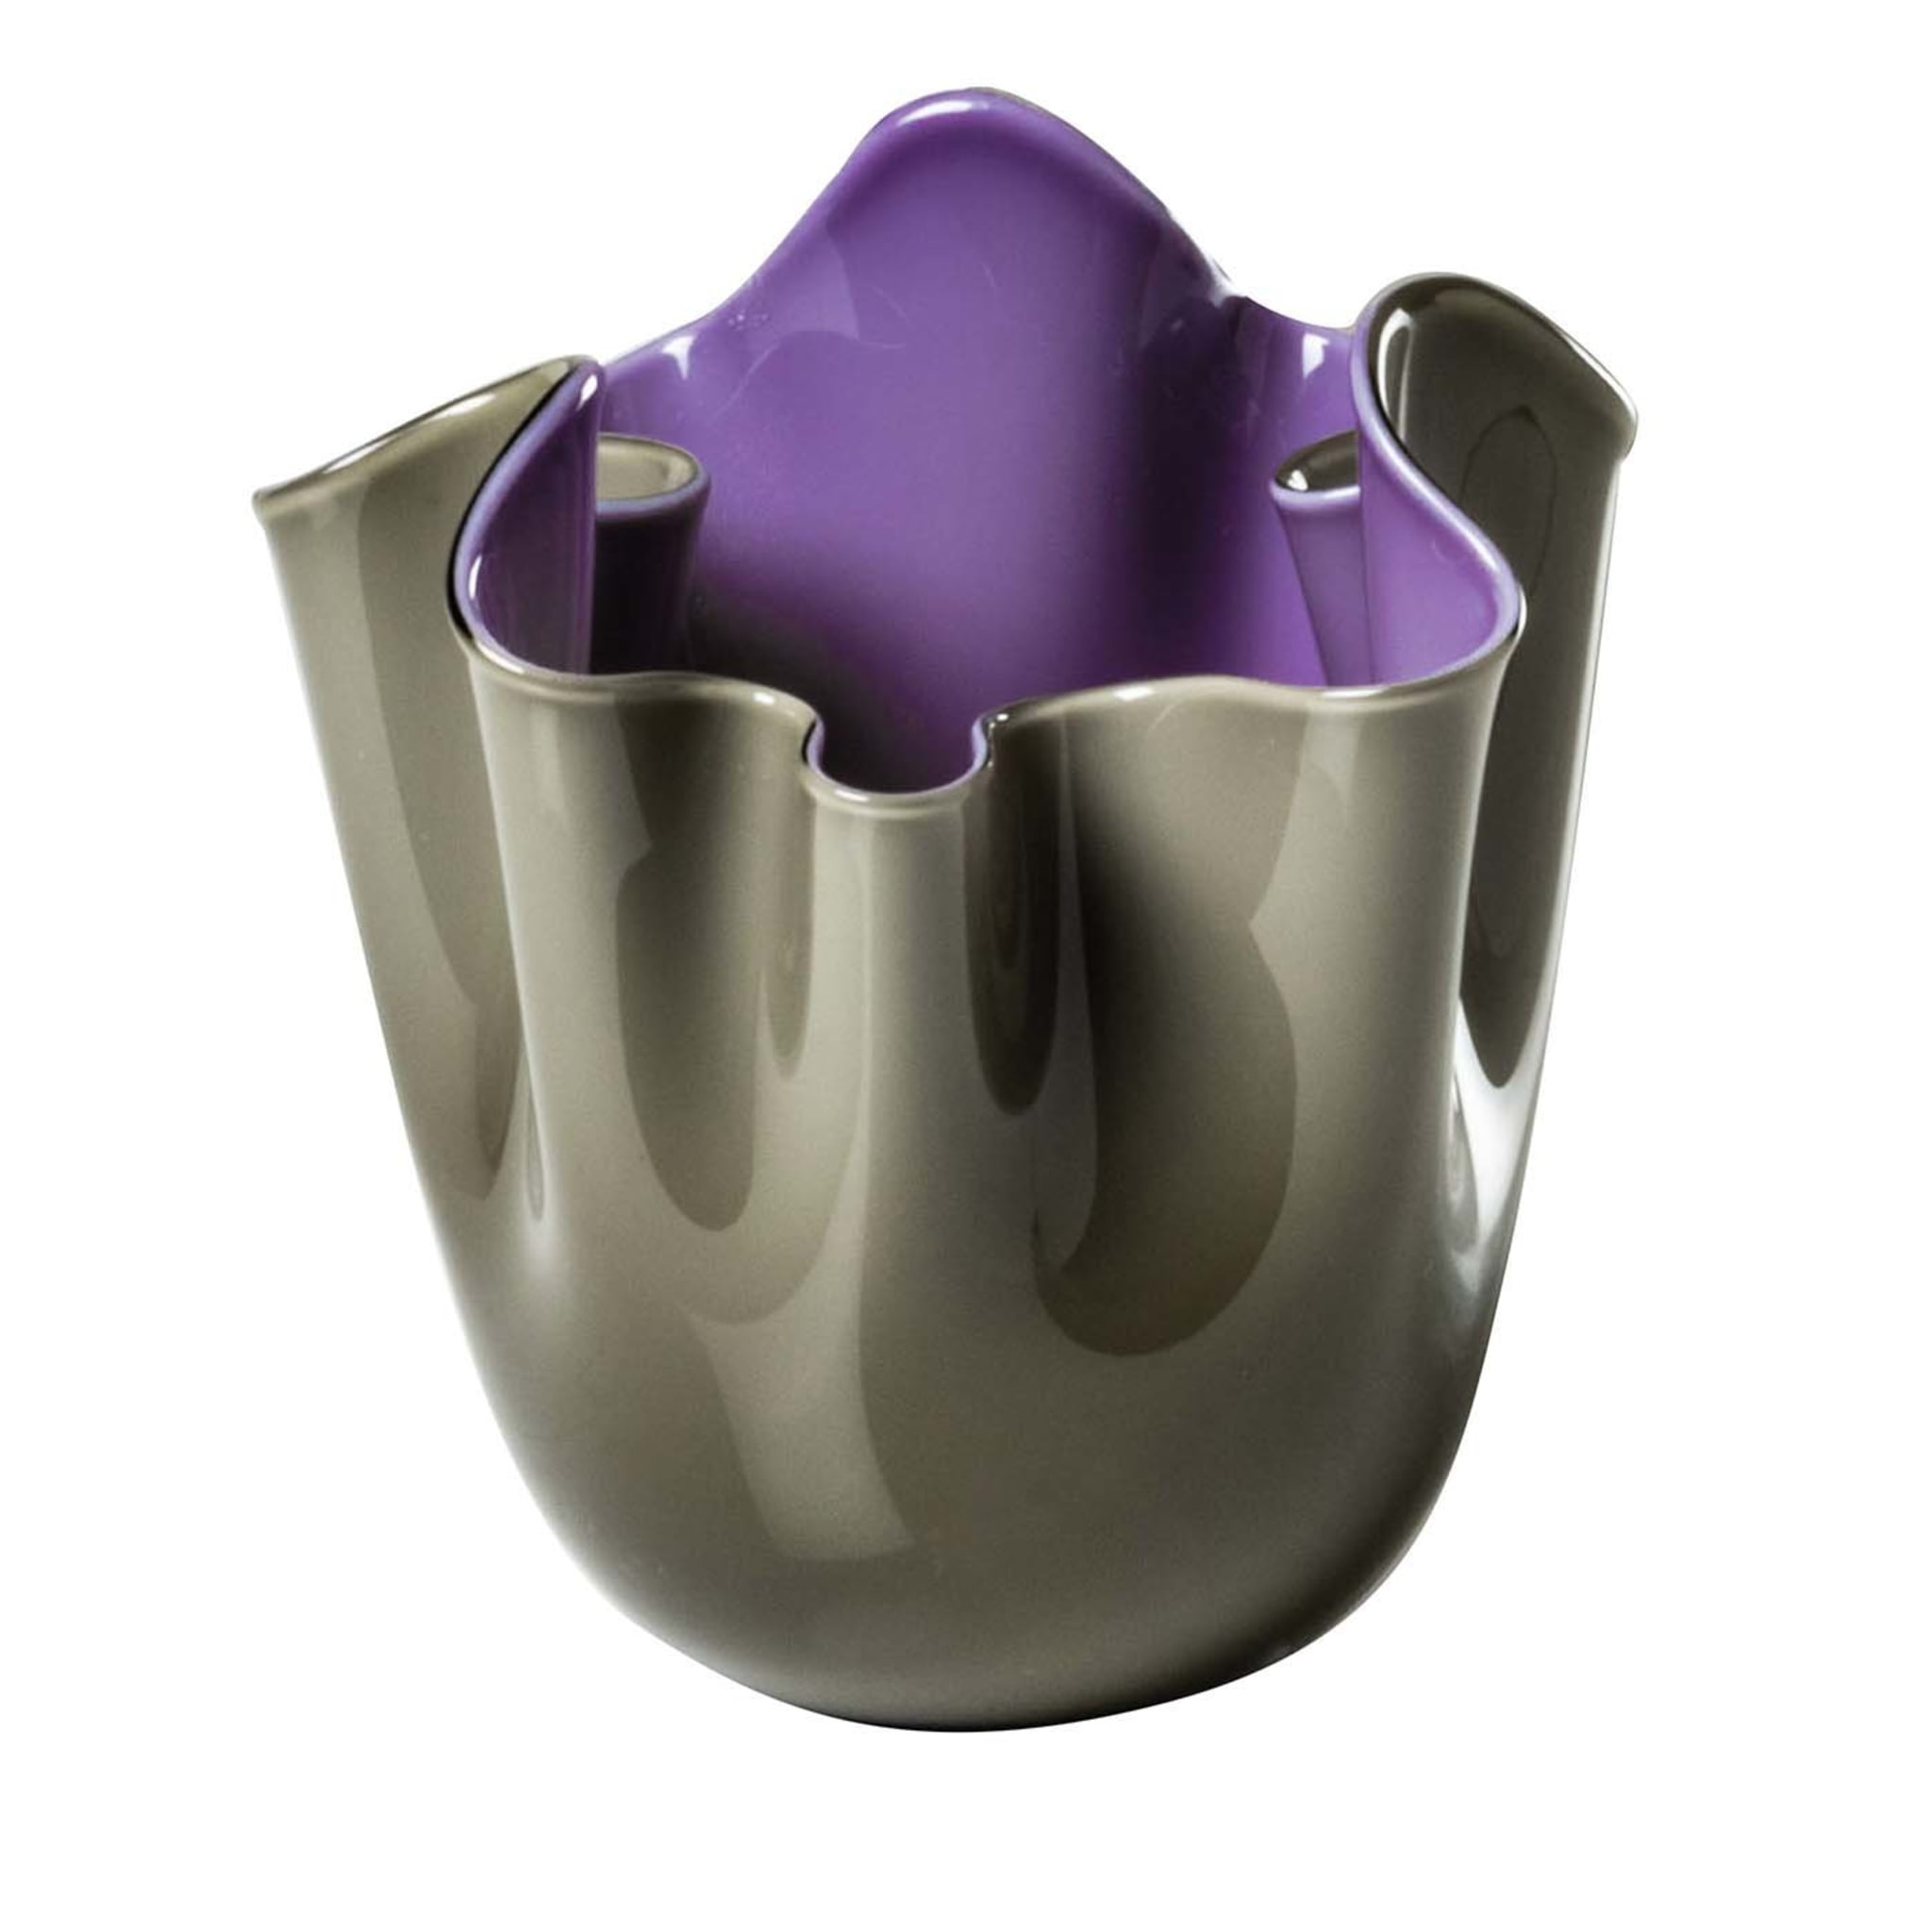 Fazzoletti Gray/Lilac Vase by Fulvio Bianconi - Main view